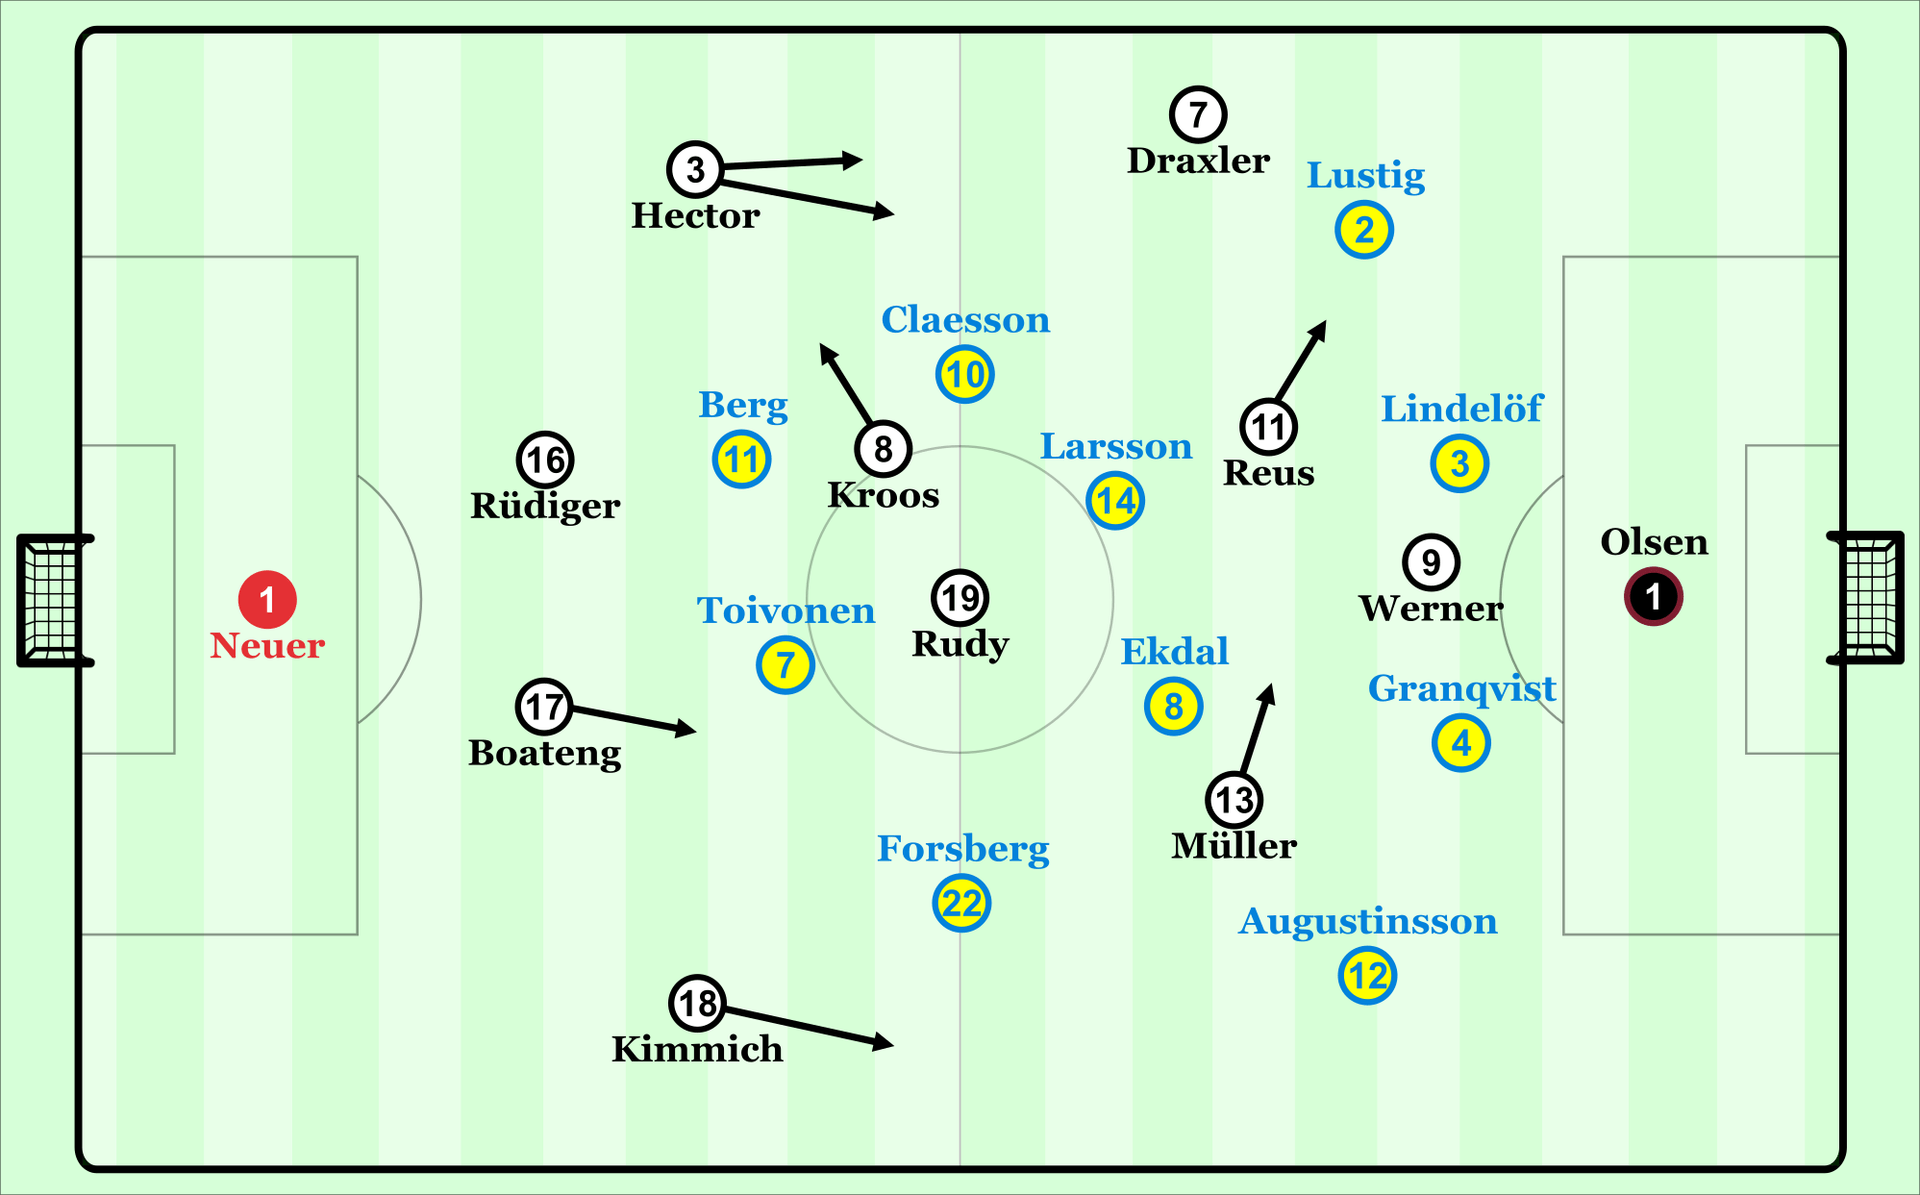 So spielte die deutsche Mannschaft gegen defensive Schweden. Rudy besetzte die Mitte. Kroos ließ sich zumeist links neben Antonio Rüdiger fallen.